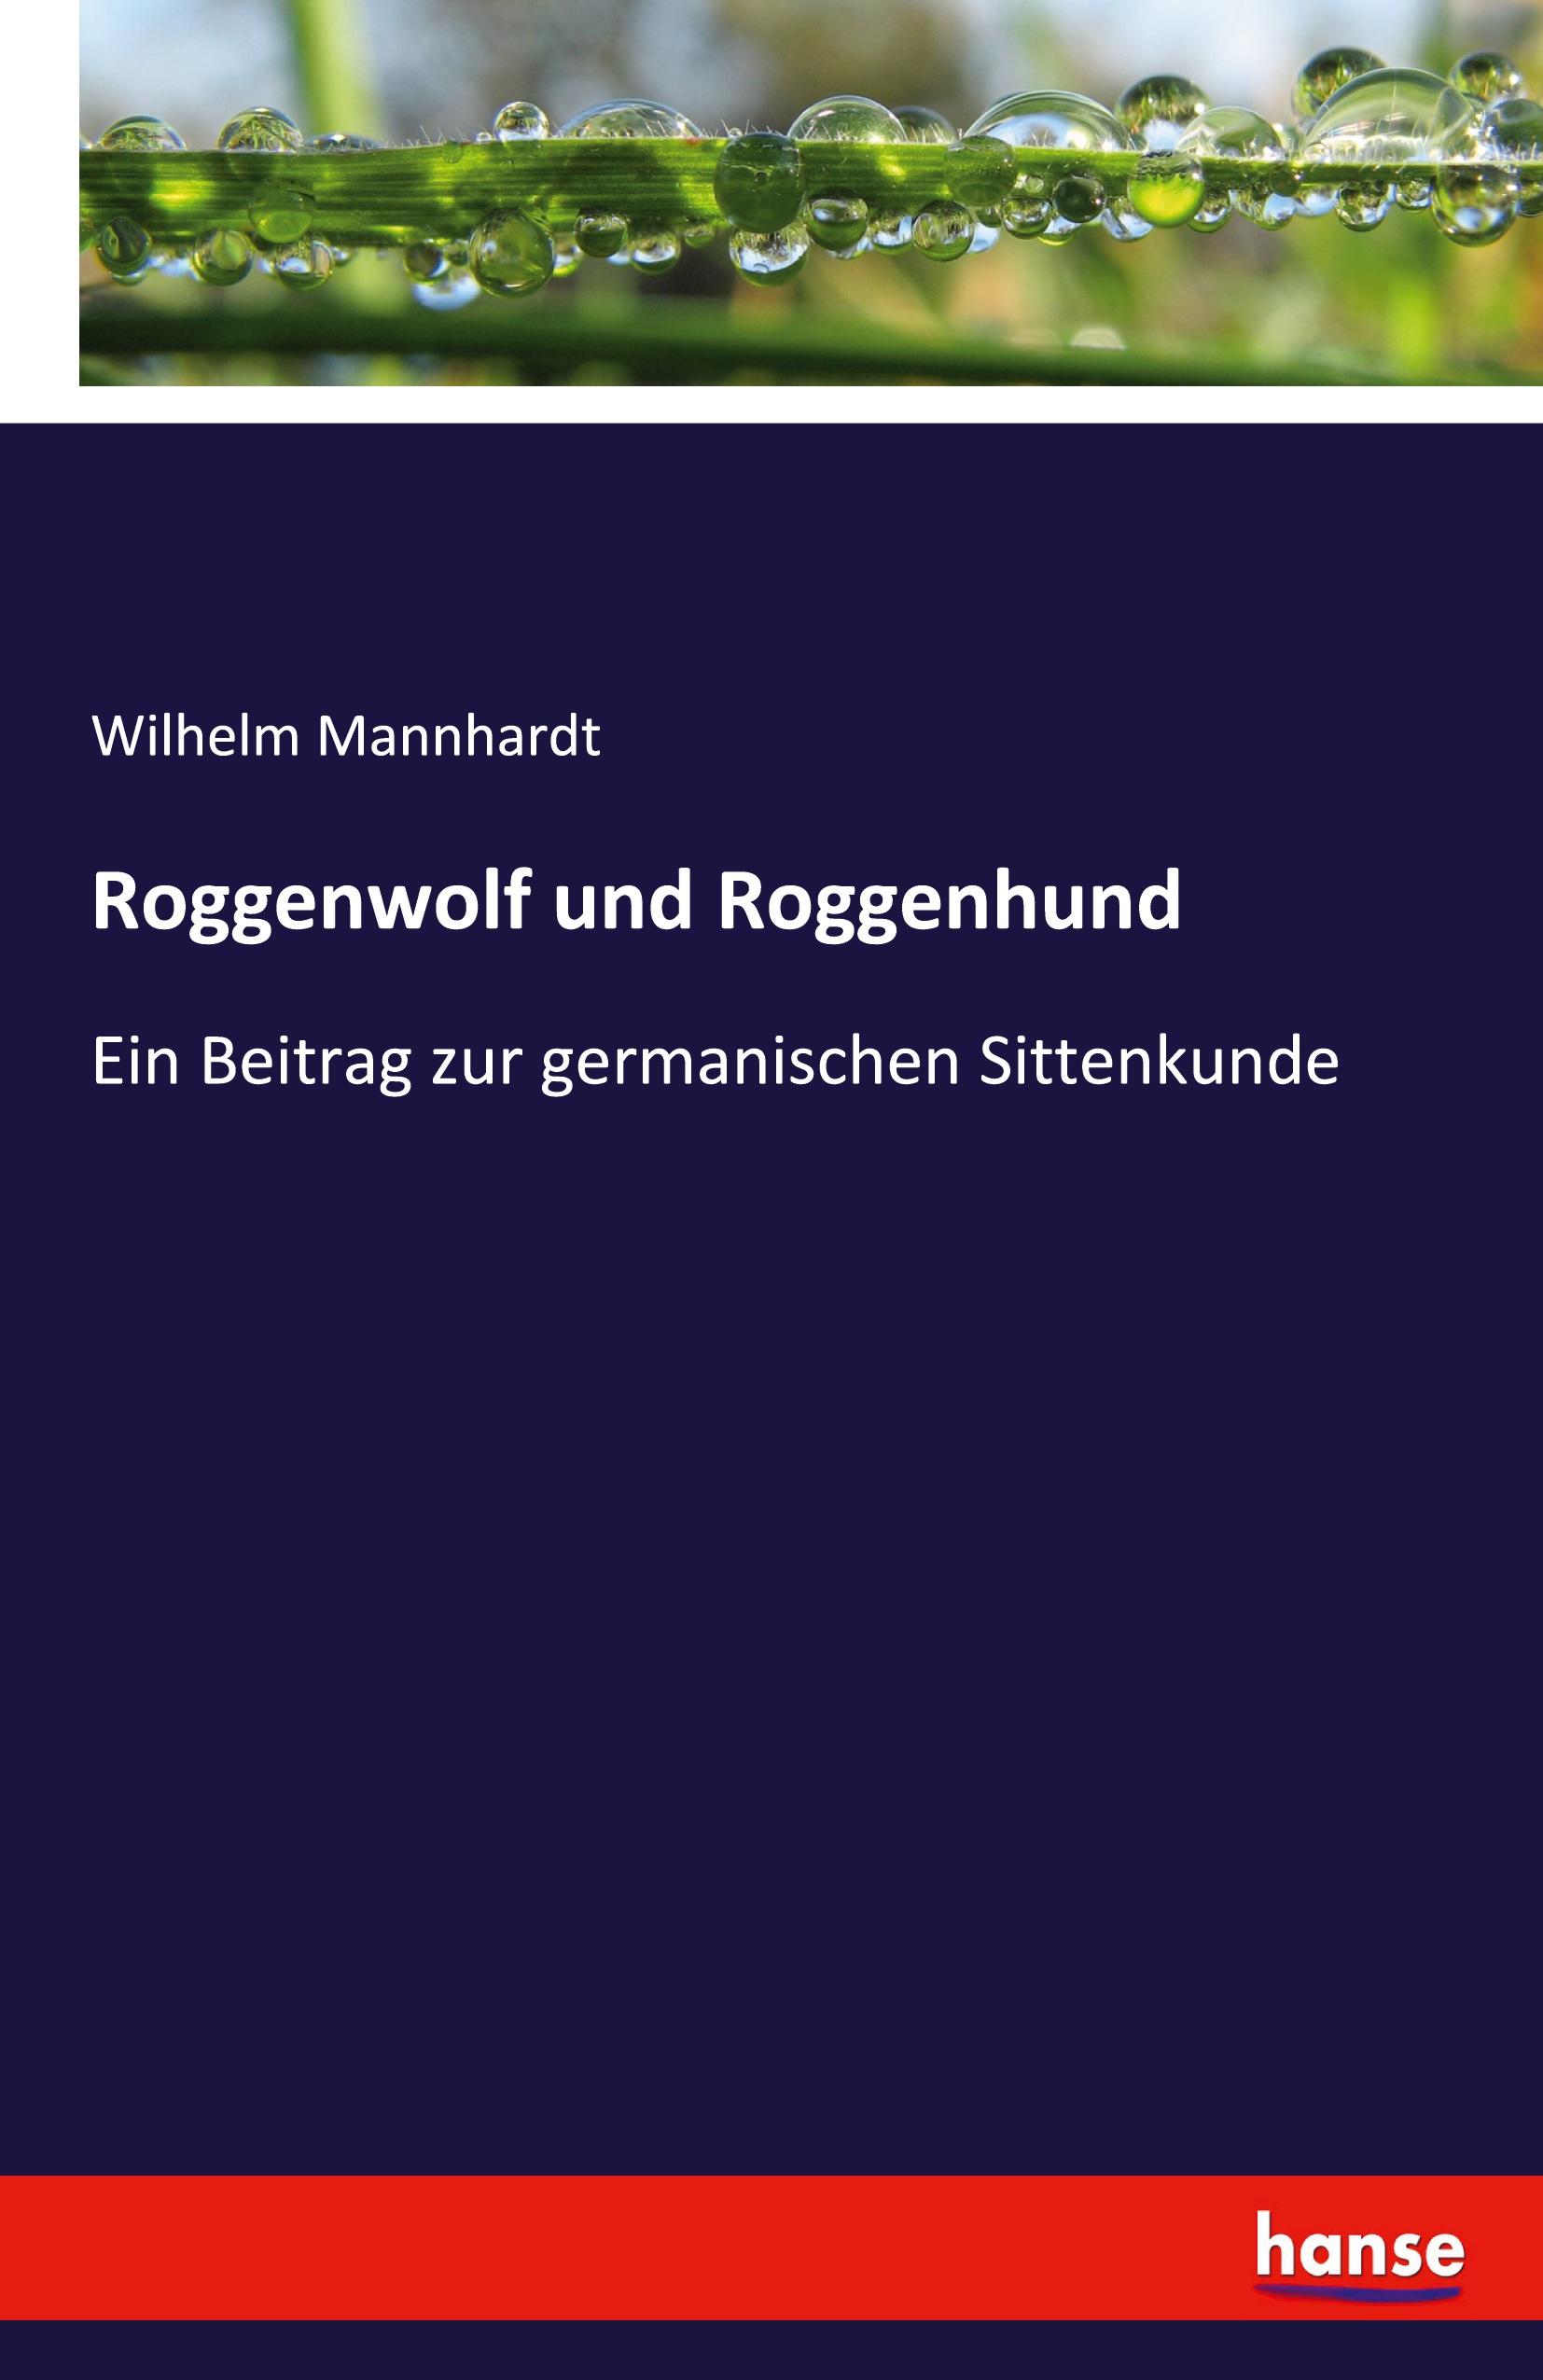 Roggenwolf und Roggenhund | Ein Beitrag zur germanischen Sittenkunde | Wilhelm Mannhardt | Taschenbuch | Paperback | 92 S. | Deutsch | 2020 | hansebooks | EAN 9783742878809 - Mannhardt, Wilhelm